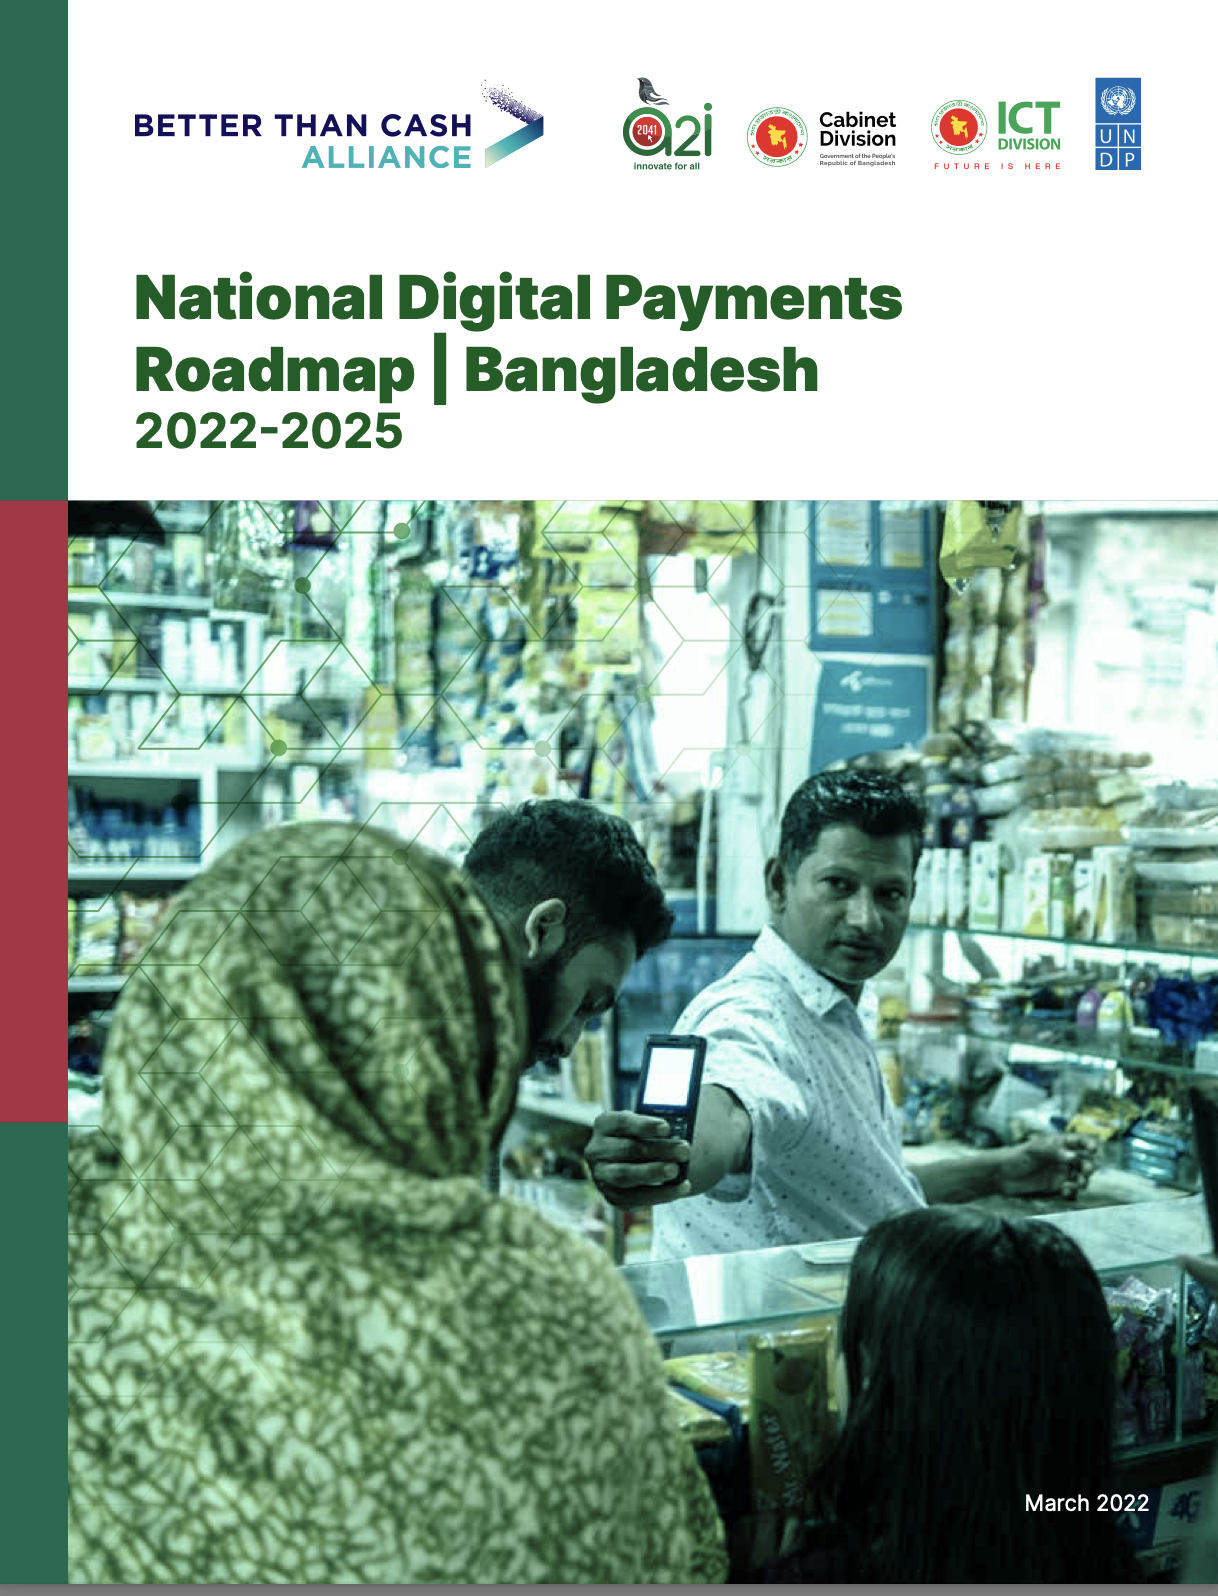 Bangladesh: National Digital Payments Roadmap 2022-2025